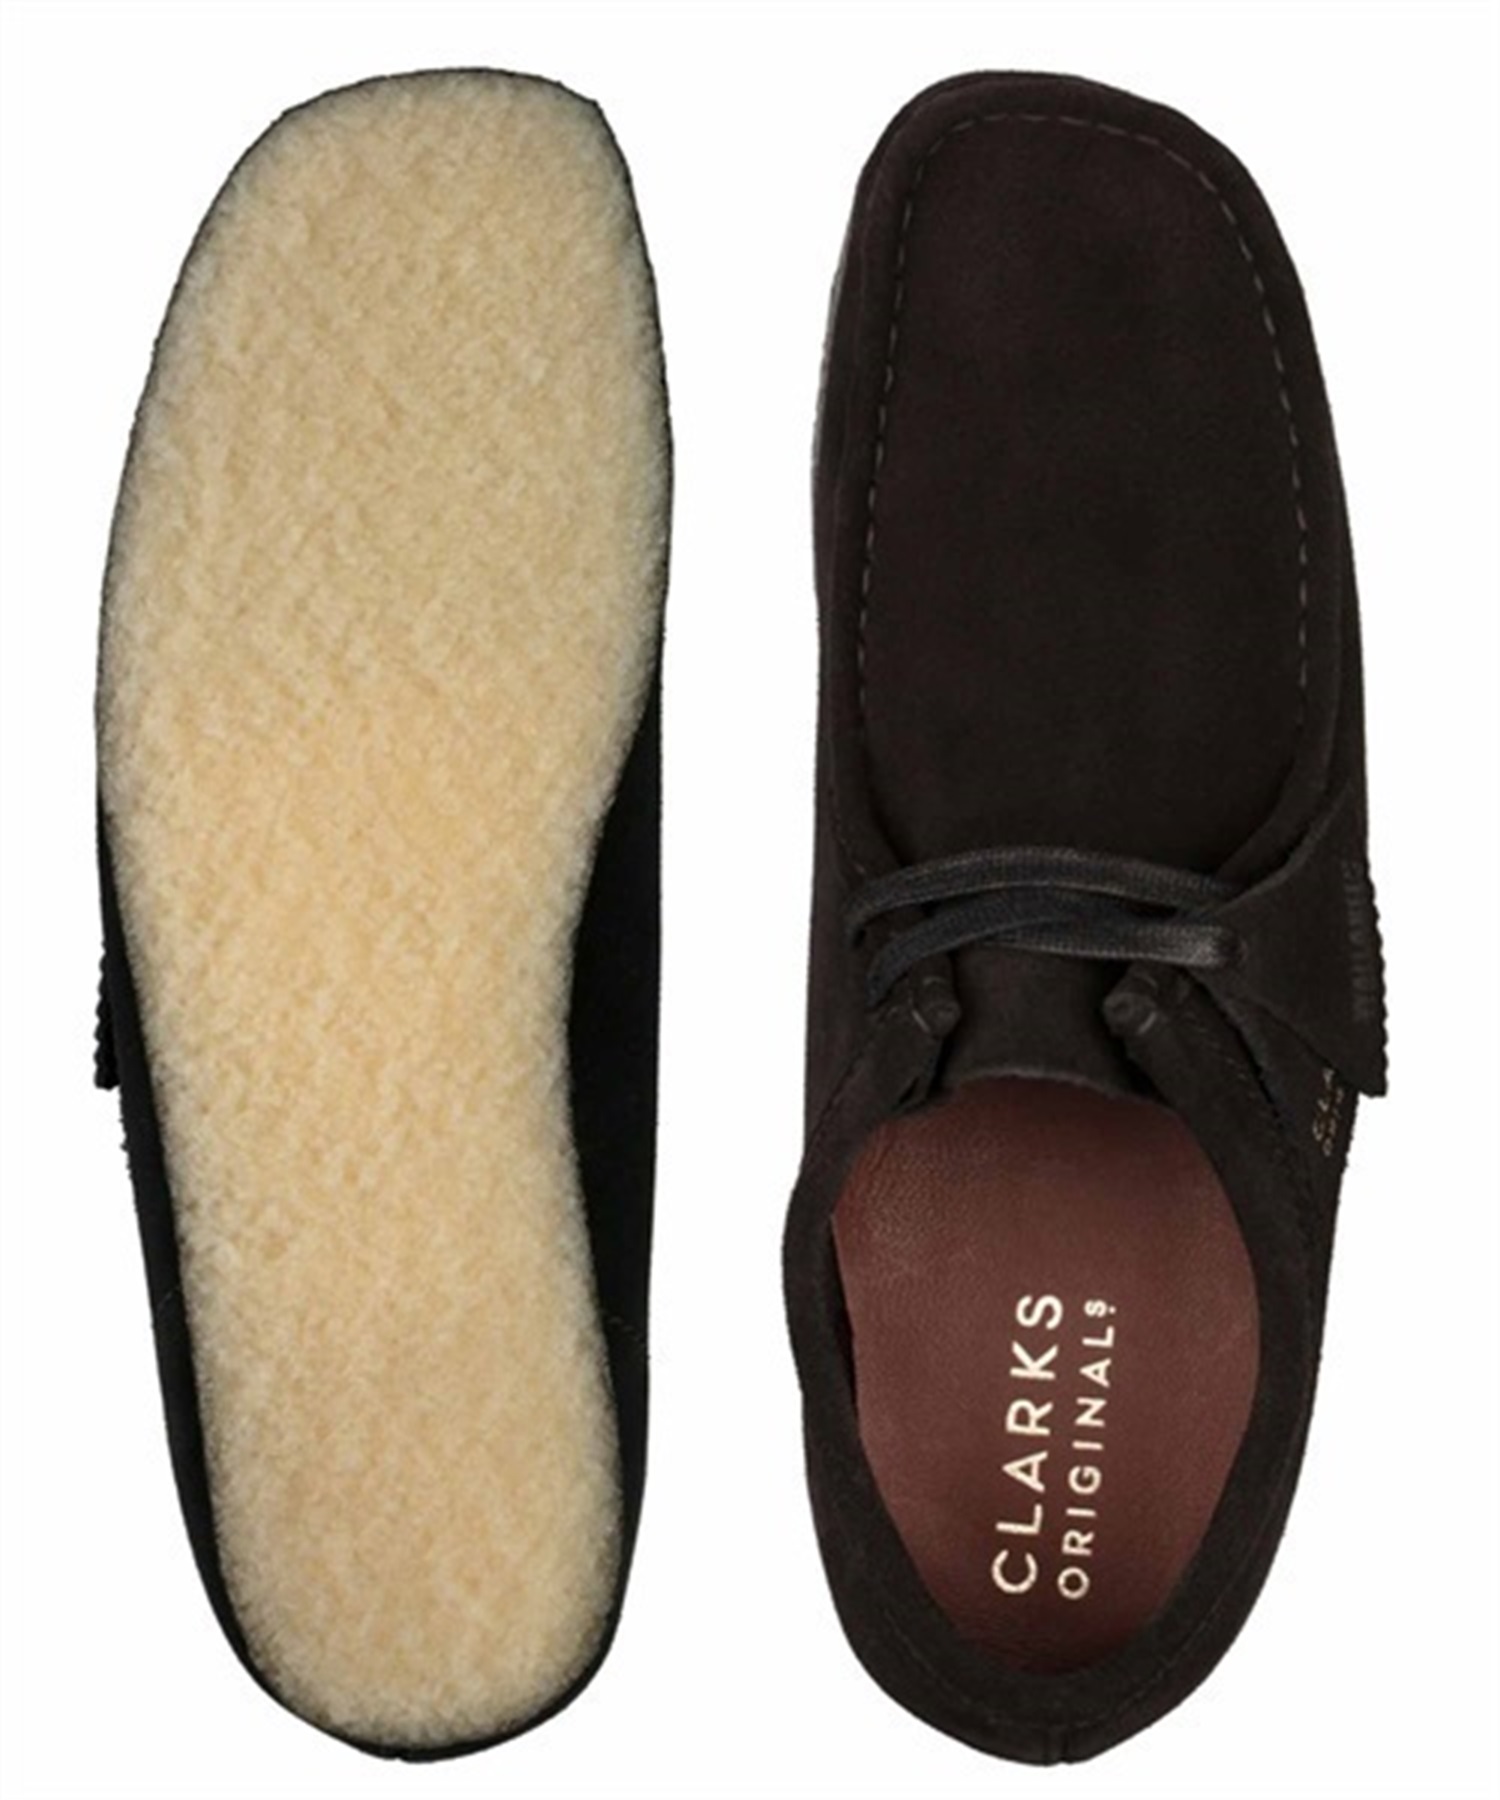 Clarks Originals/クラークス オリジナルス  WALLABEE ワラビー ブーツ 正規取扱店  26155519(BKSDE-25.5cm)